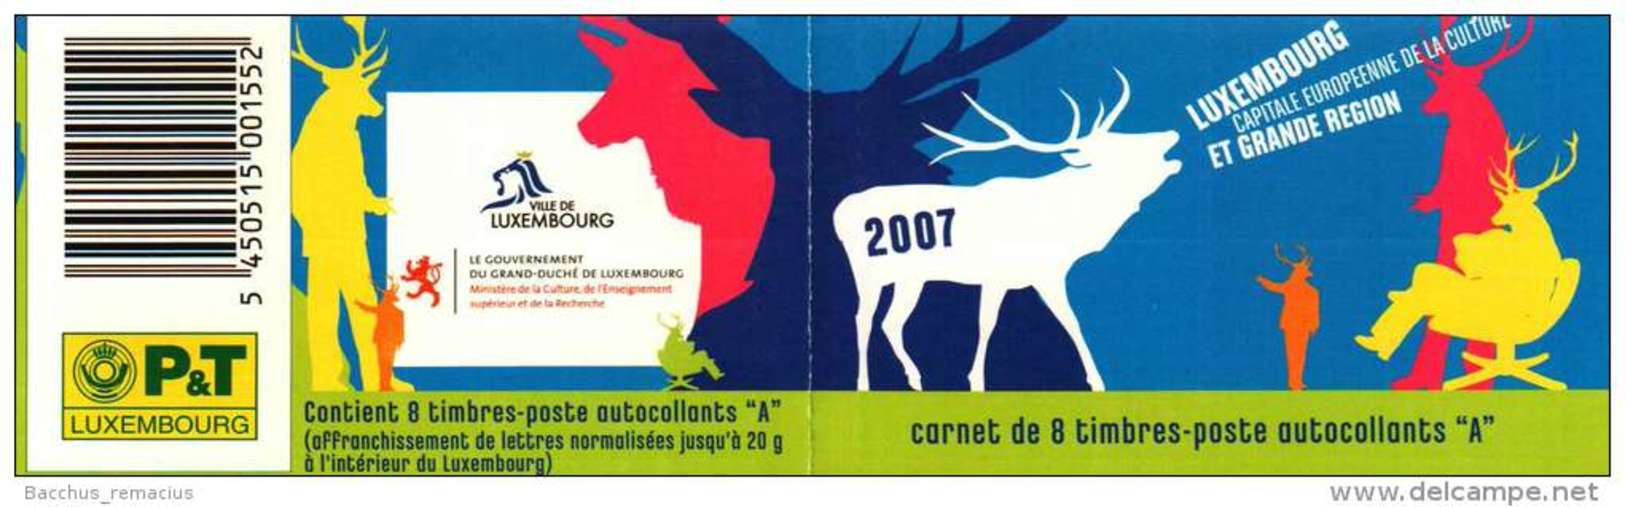 Luxembourg Et Grande Région  Carnet De 8 Timbres "A"  Autocollants Capitale Européenne De La Culture 2007 - Cuadernillos